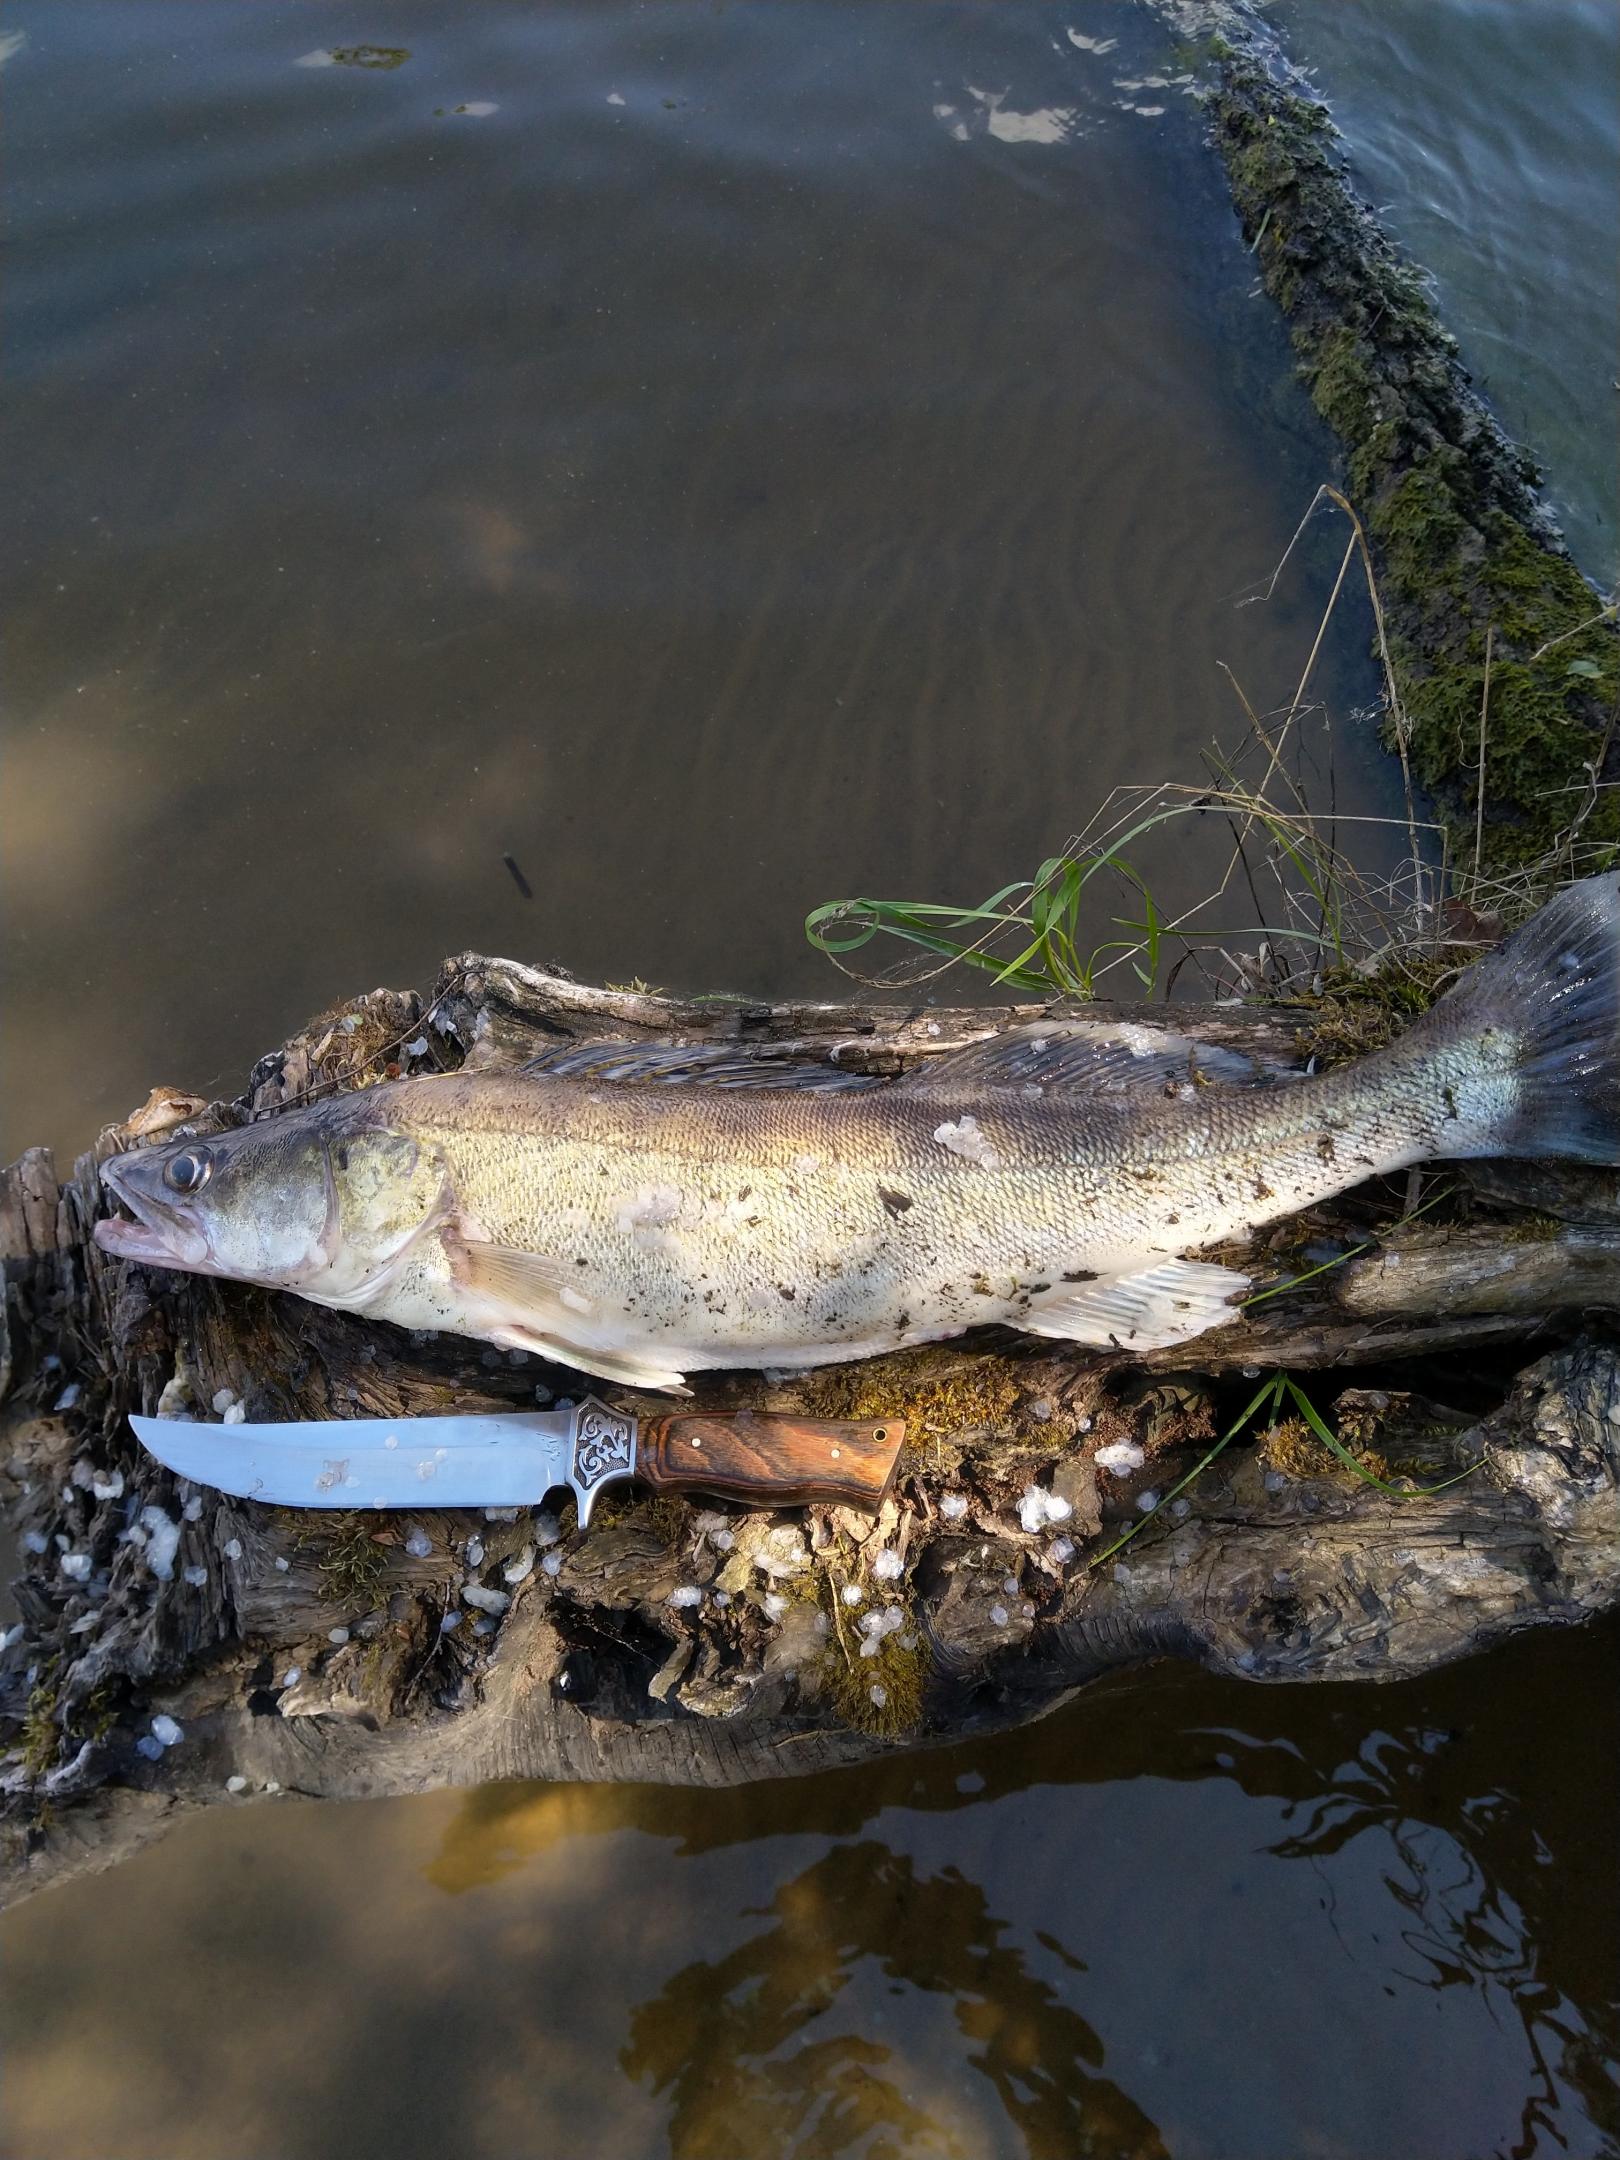  После открытия сезона осталась некоторая недосказанность, плюс жизненные ... | Отчеты о рыбалке в Беларуси